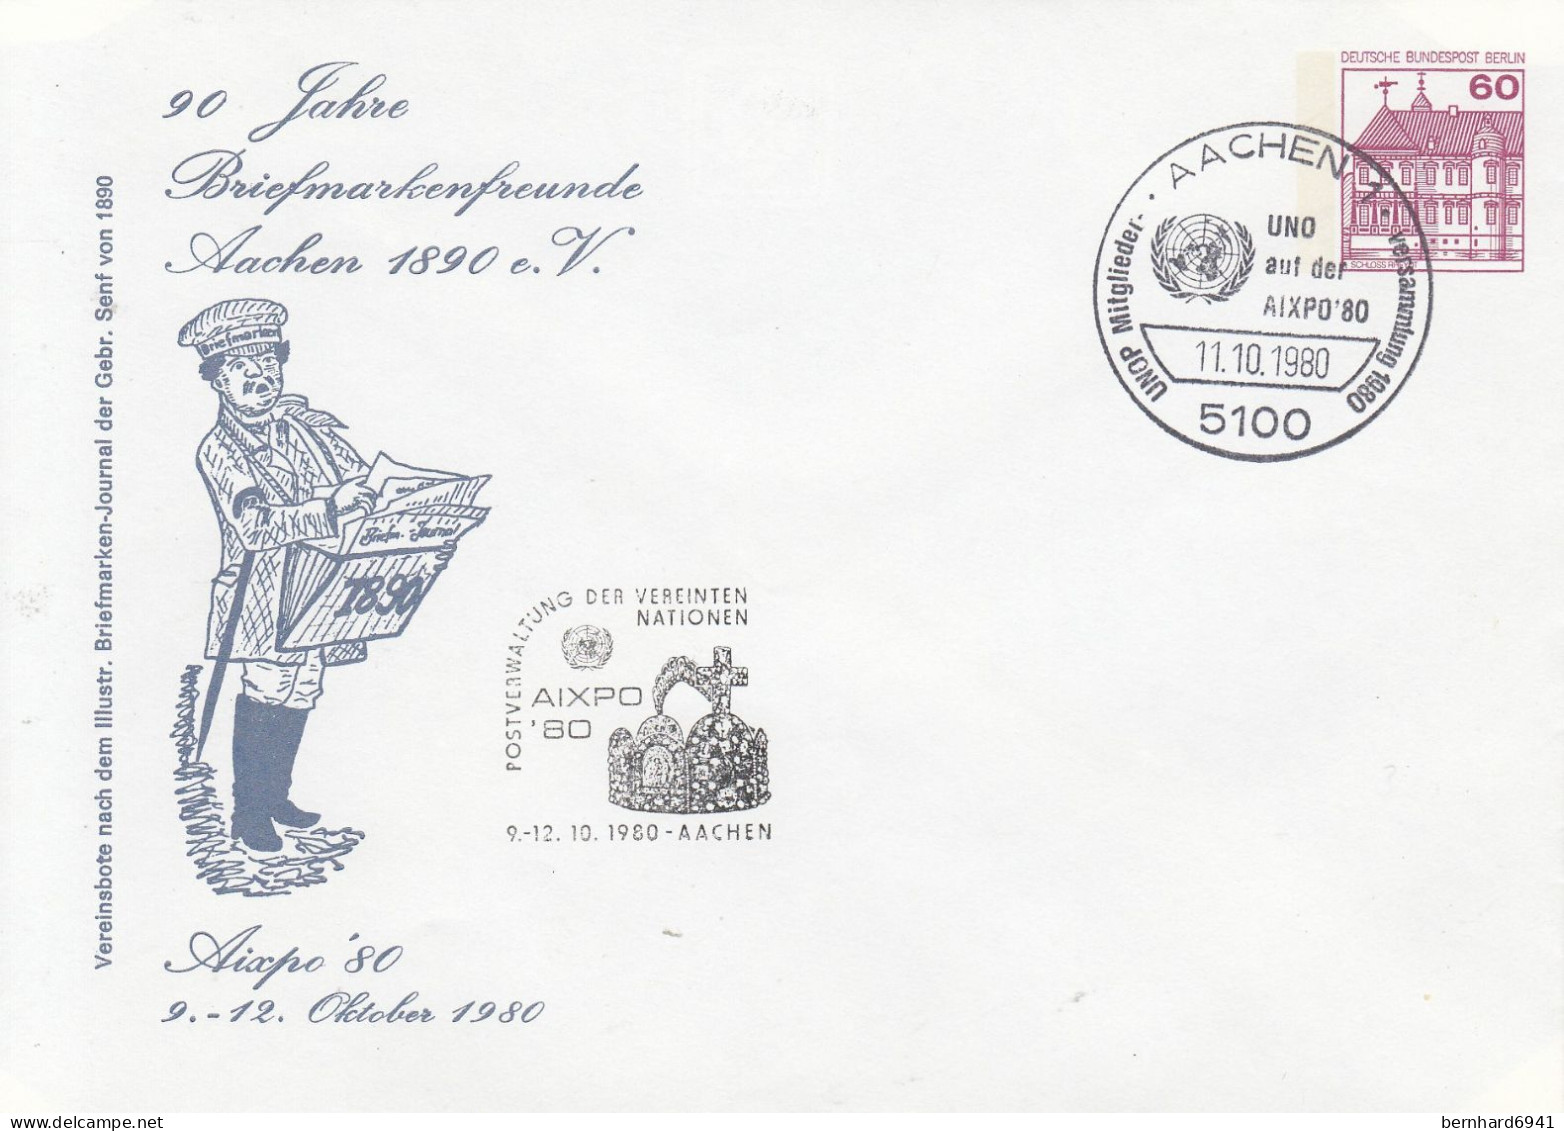 B PU 75/8 90 Jahre Briefmarkenfreunde Aachen 1890 E.V. -Aixpo`80 9.-12. Oktober 1980, Aachen 1 - Privé Briefomslagen - Gebruikt